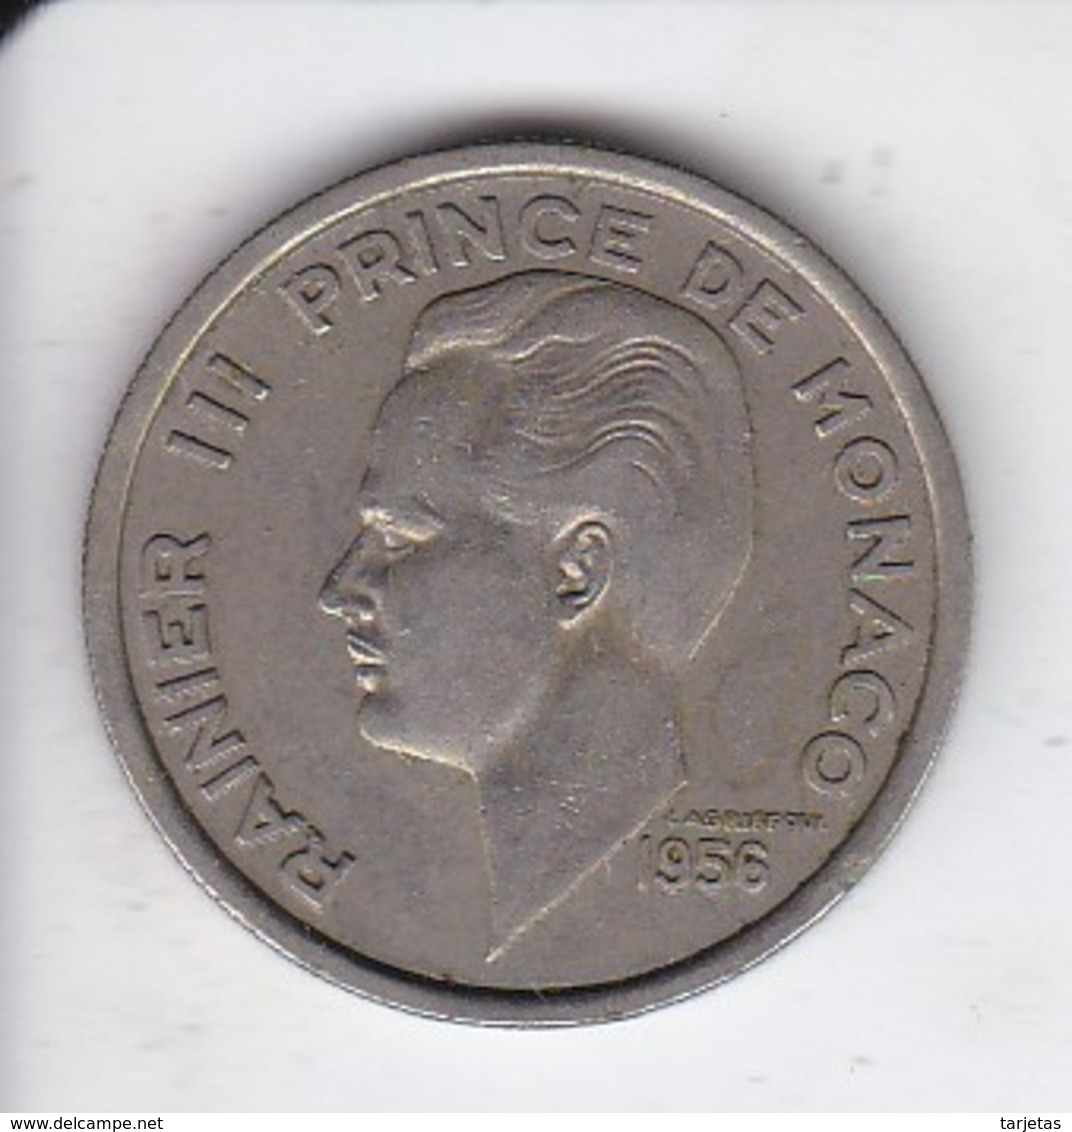 MONEDA DE MONACO DE 100 FRANCS DEL AÑO 1956 (COIN) RAINIER III - 1949-1956 Old Francs